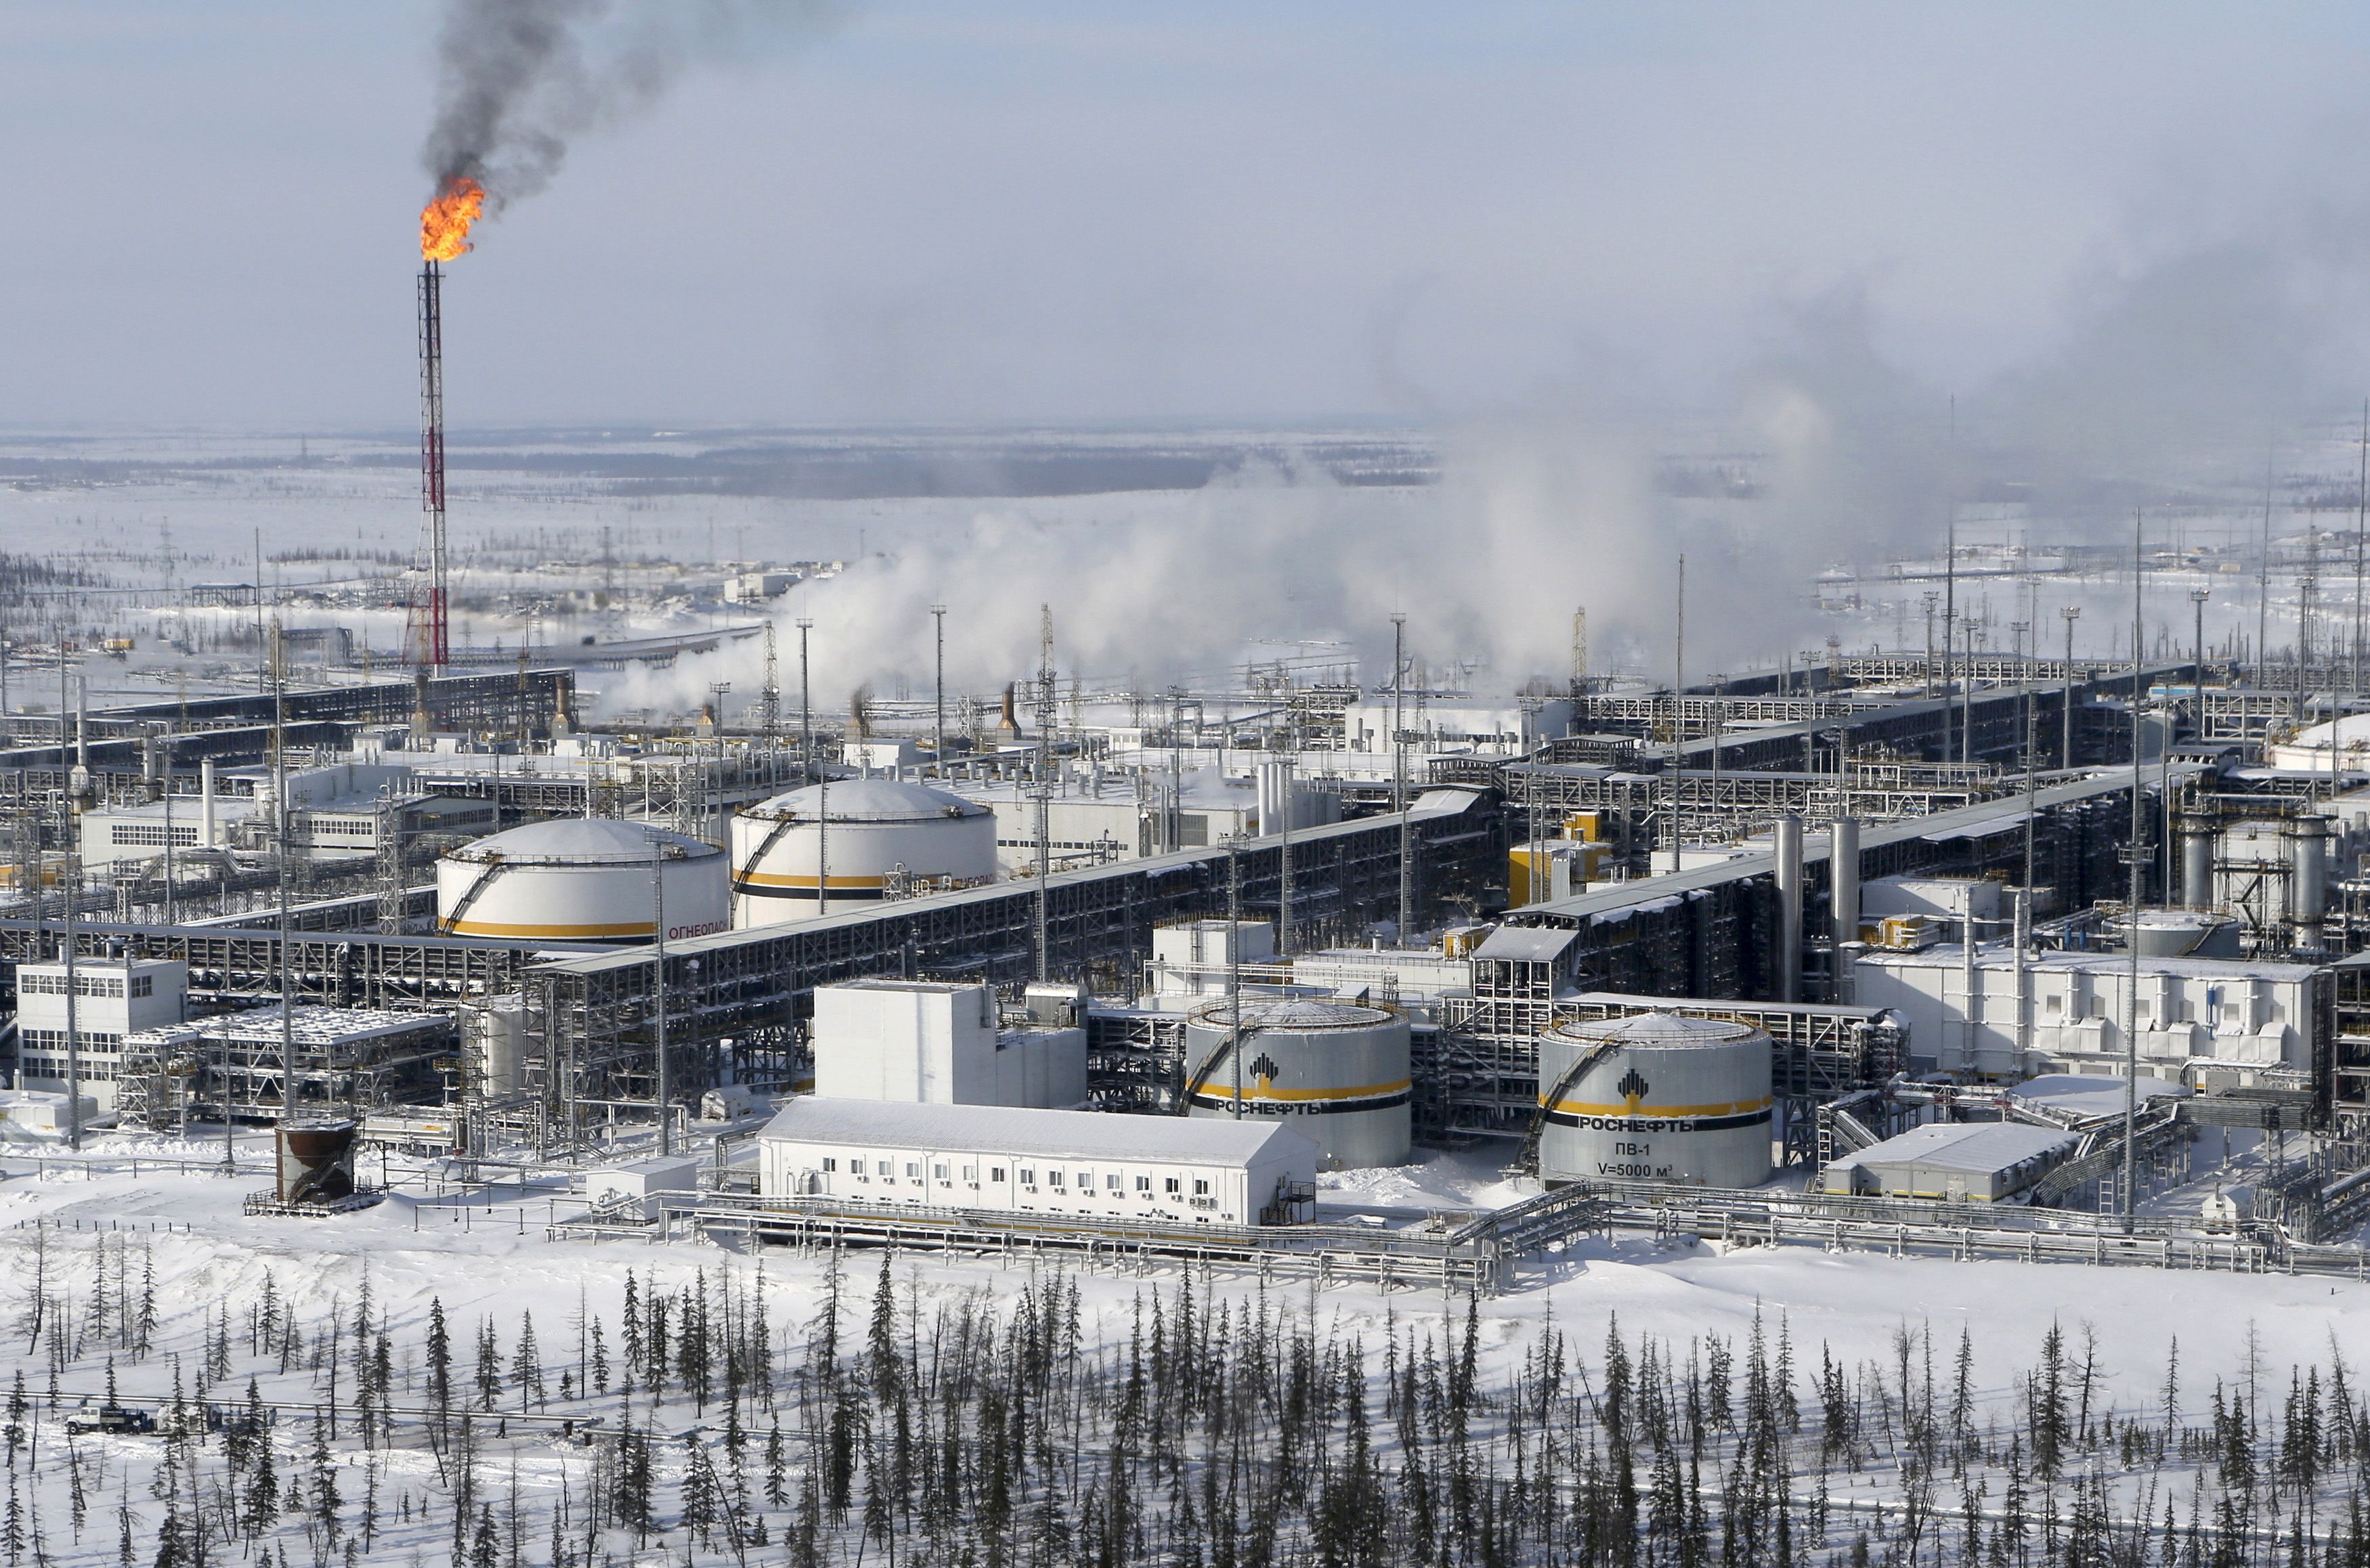 oil treatment facilities at Vankorskoye oil field owned by Rosneft north of Krasnoyarsk